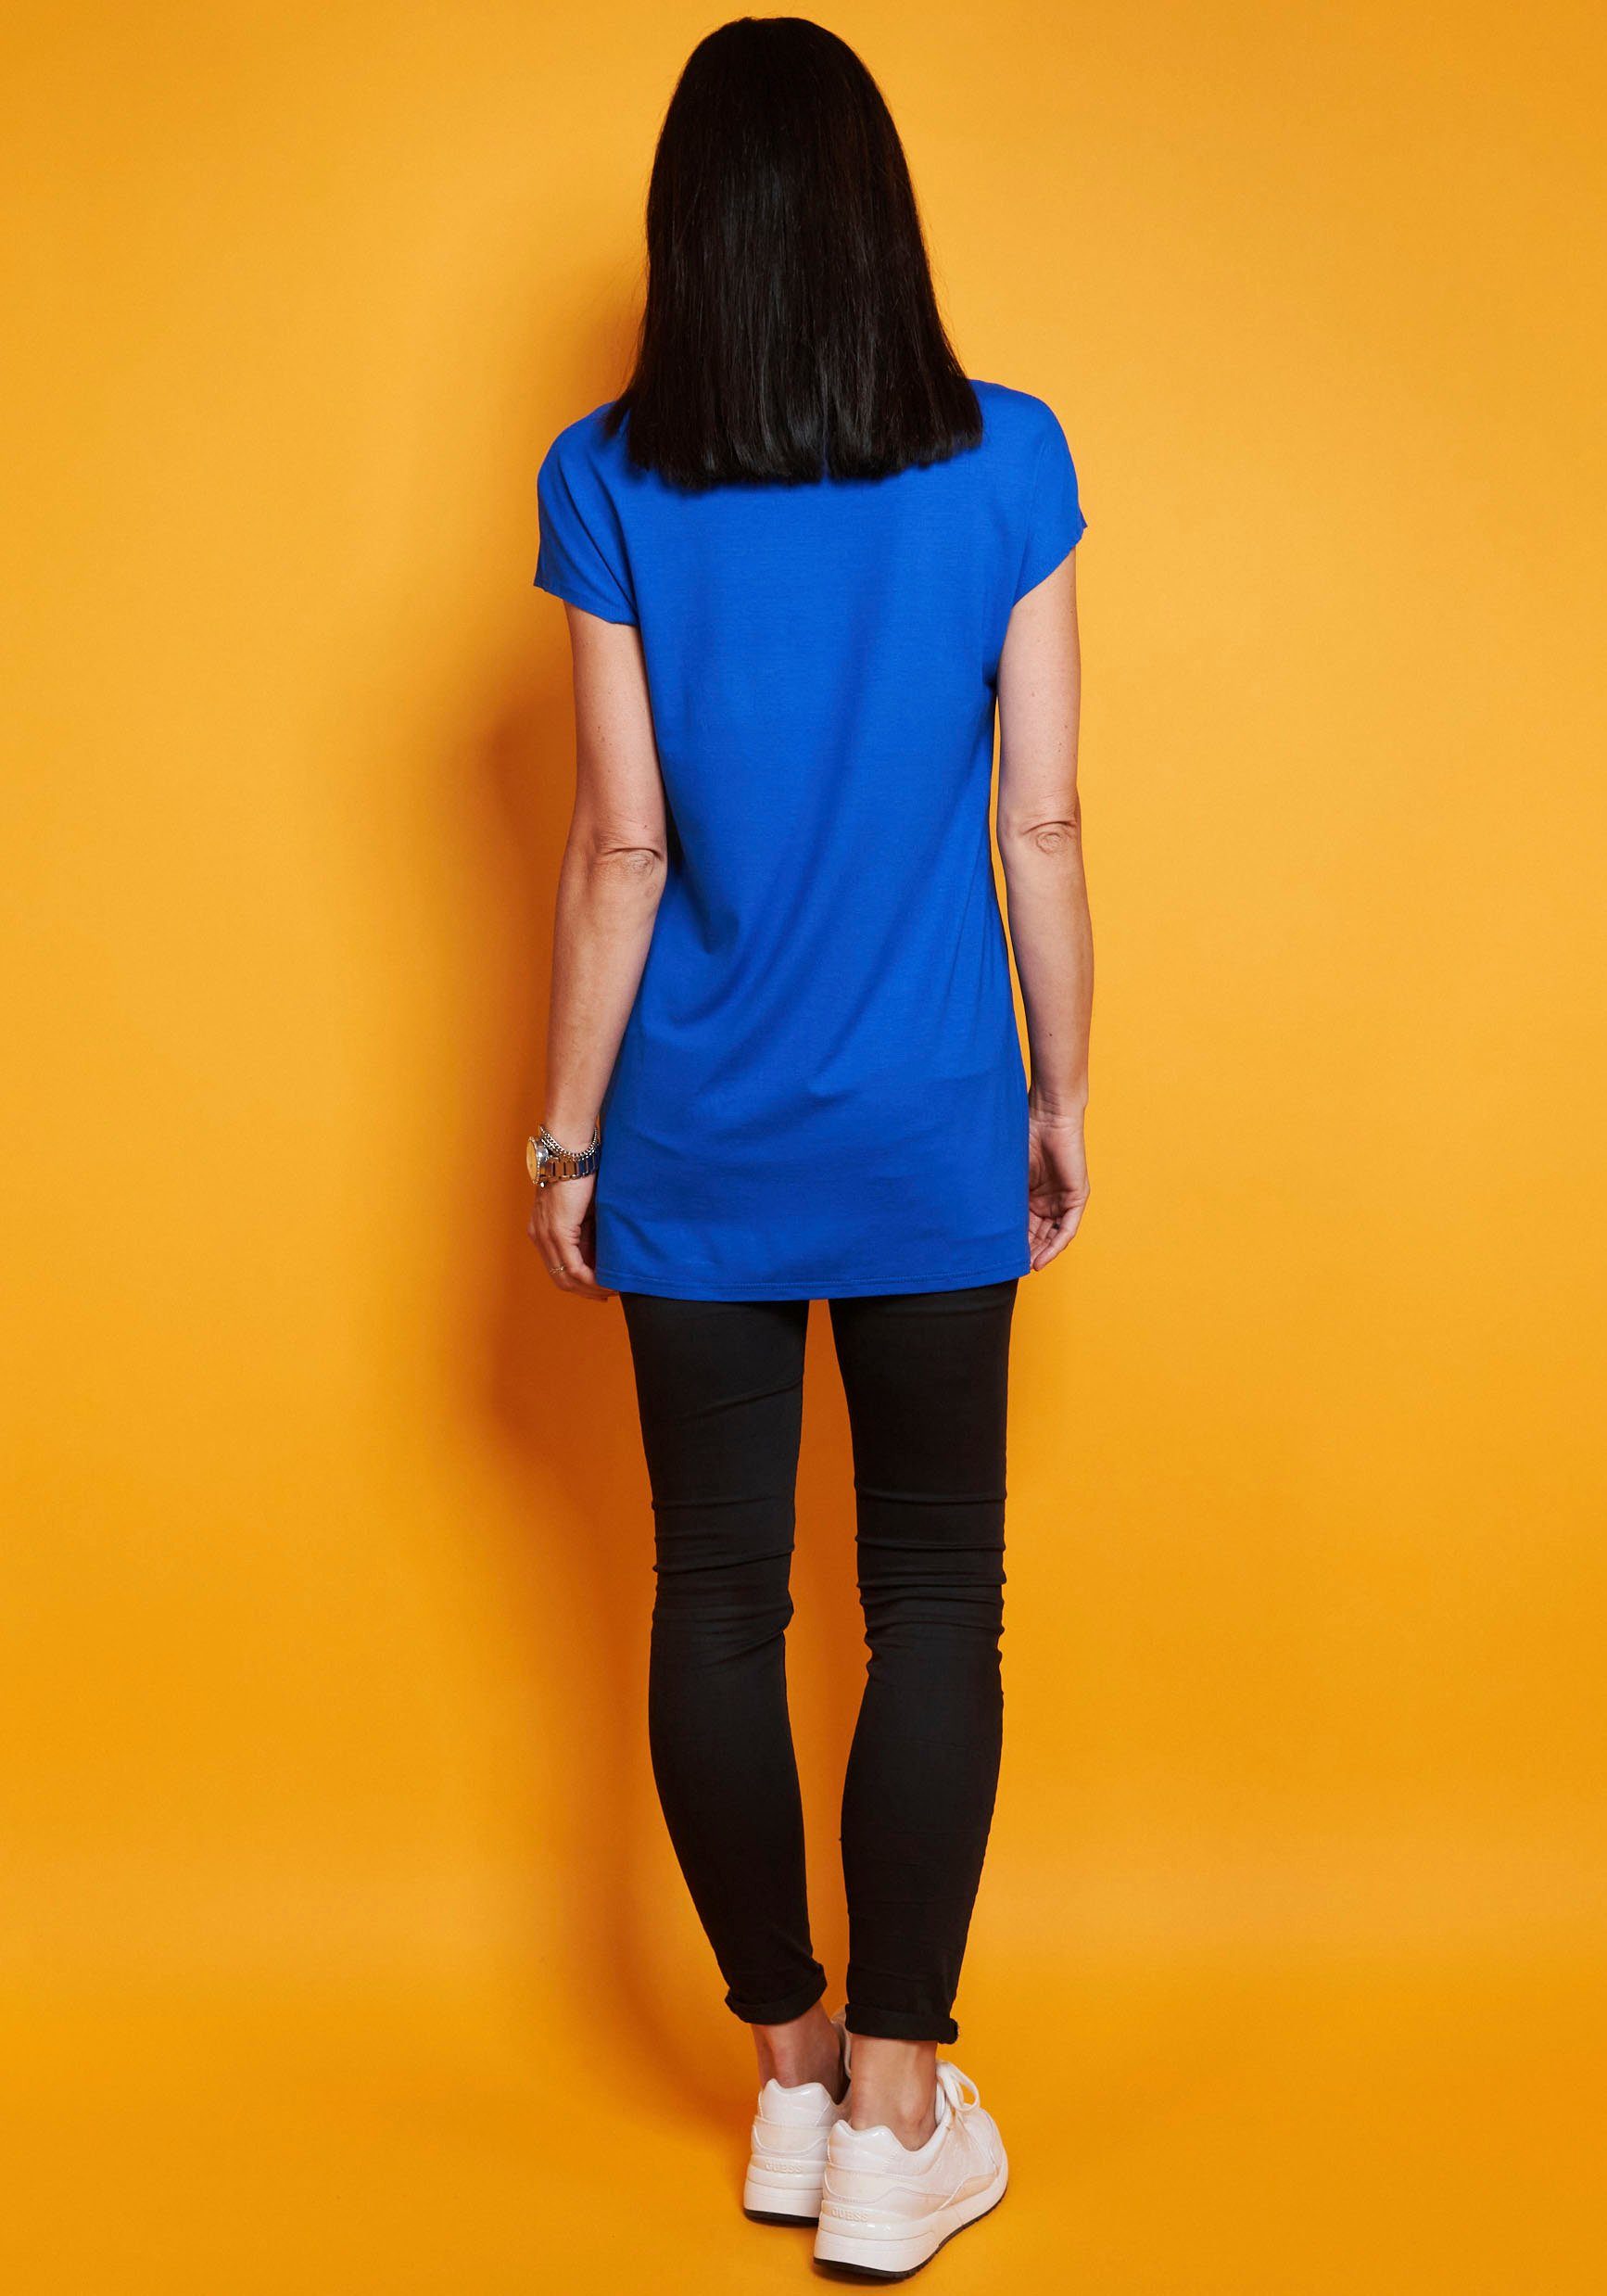 Seidel Moden Longshirt in schlichtem Design blau